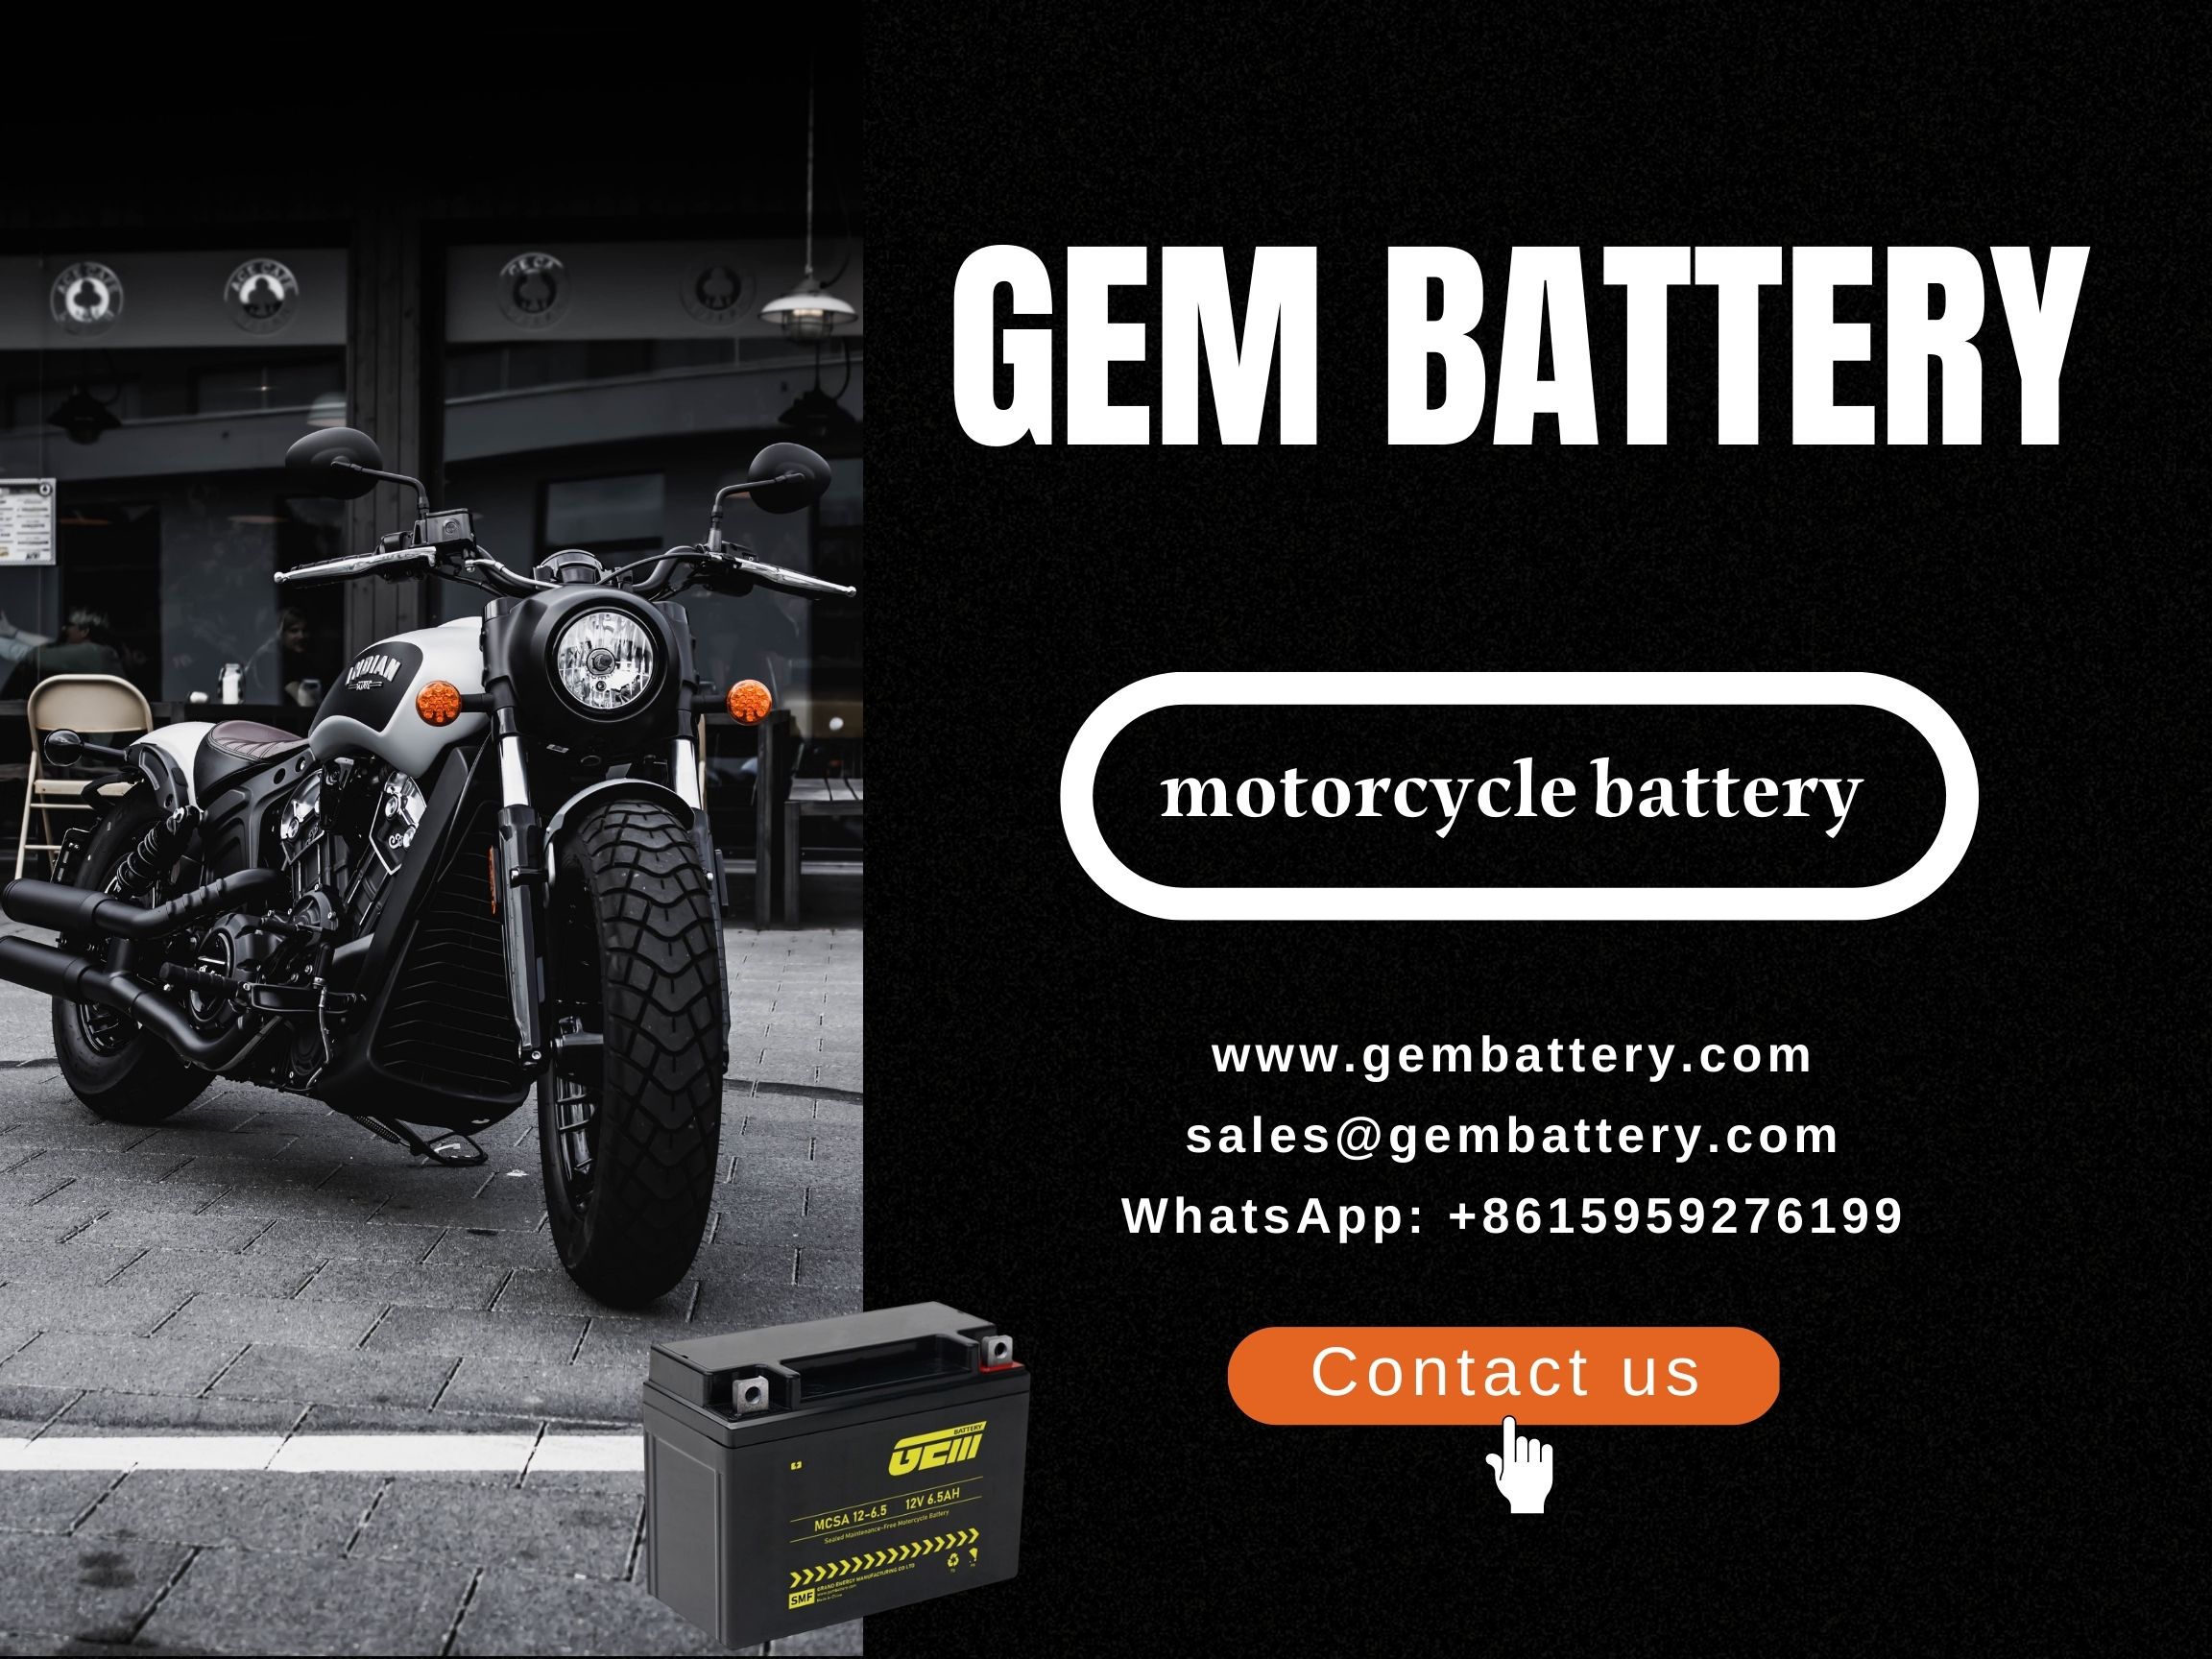 baterie motocyklu